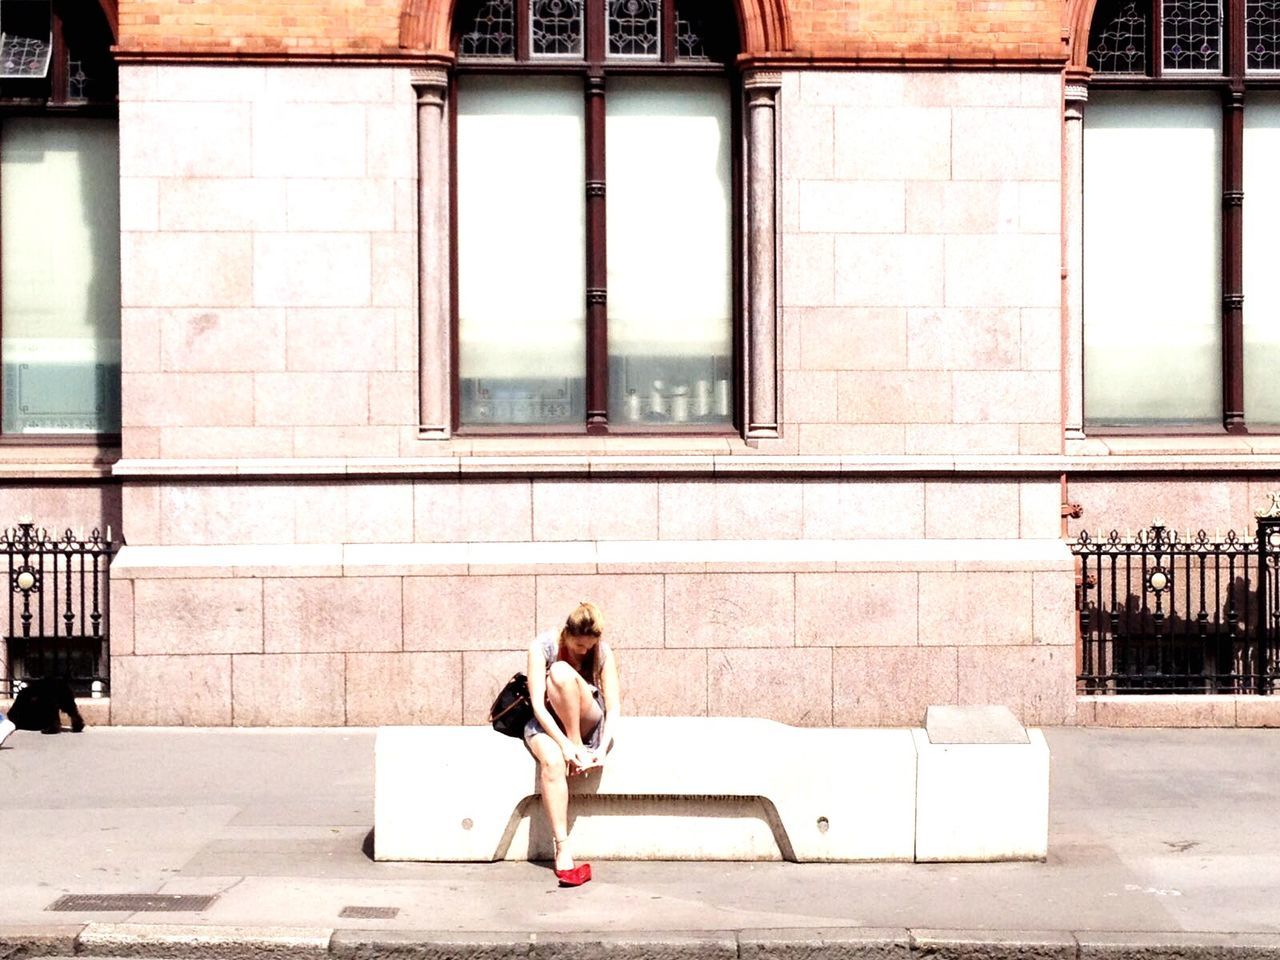 WOMAN SITTING ON SIDEWALK BY BUILDING